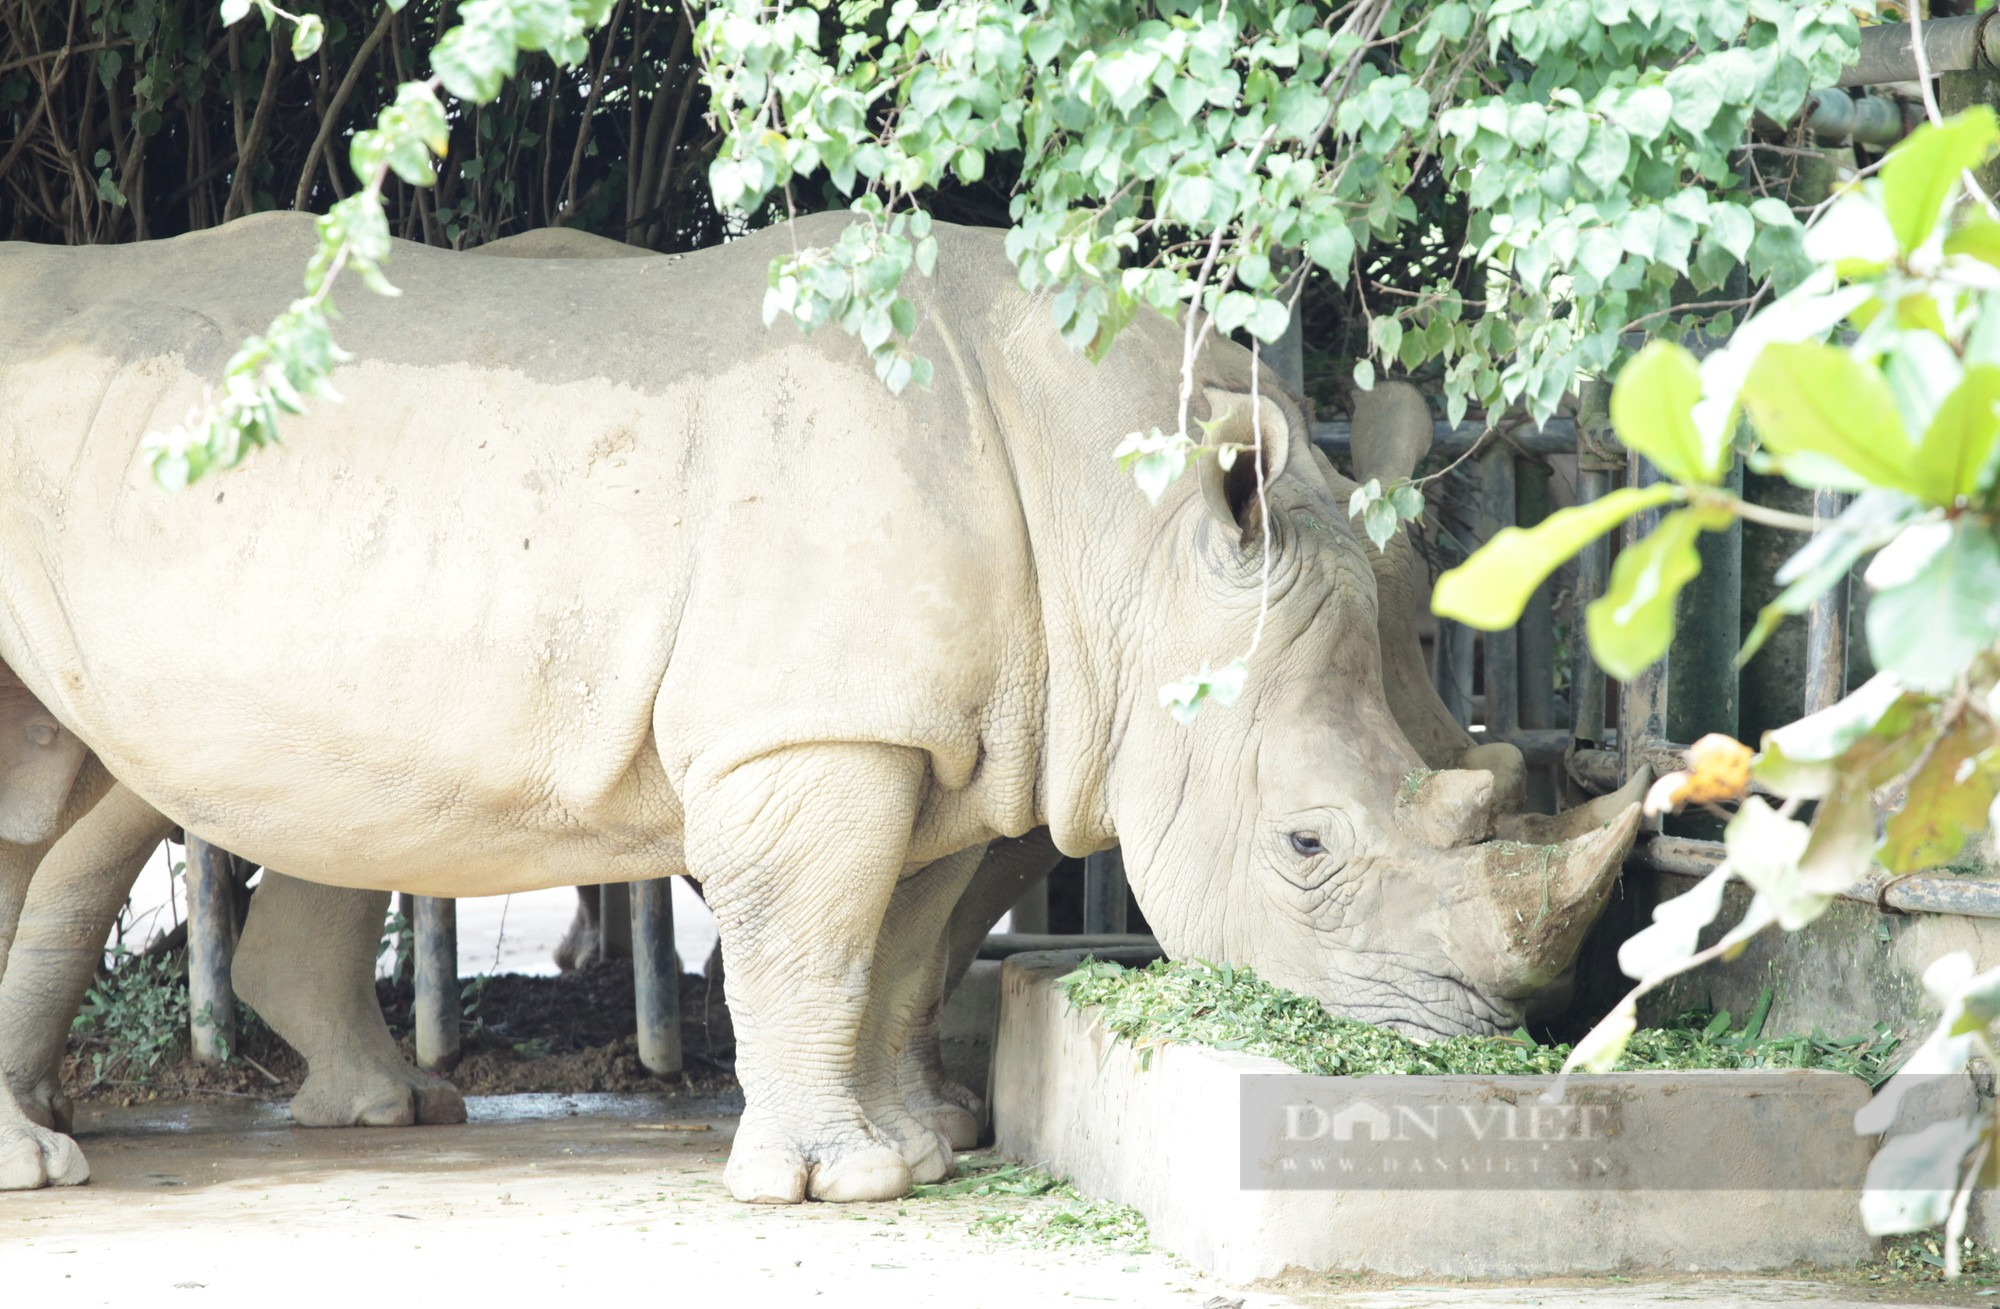 Cận cảnh cuộc sống của những chú tê giác 2 sừng đang được nuôi tại Nghệ An - Ảnh 2.